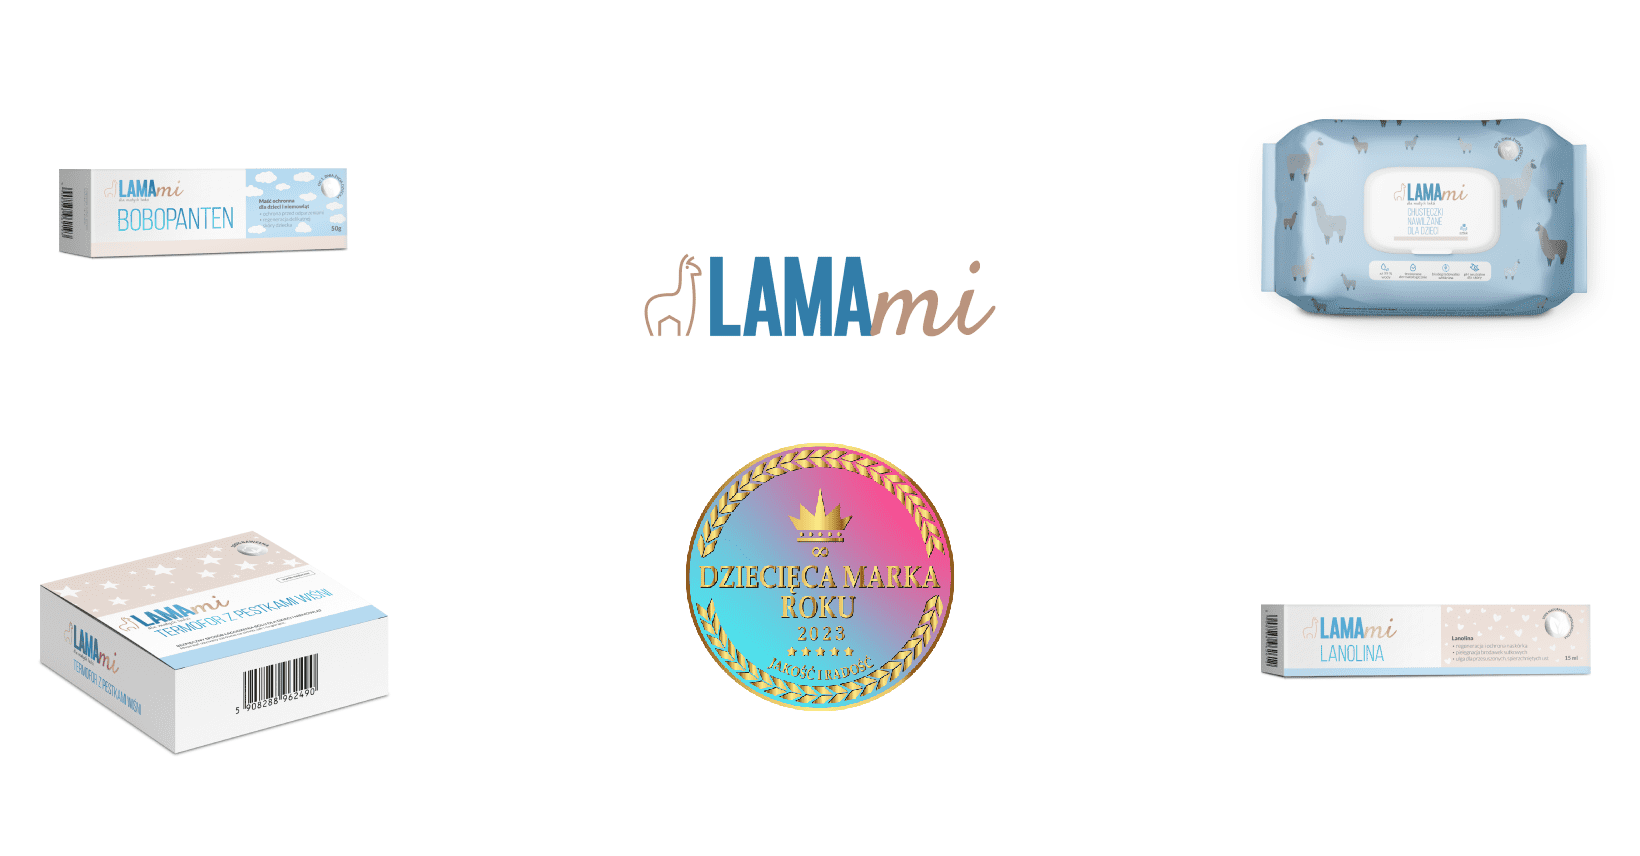 LAMAmi - marka, która dba o małych i dużych!